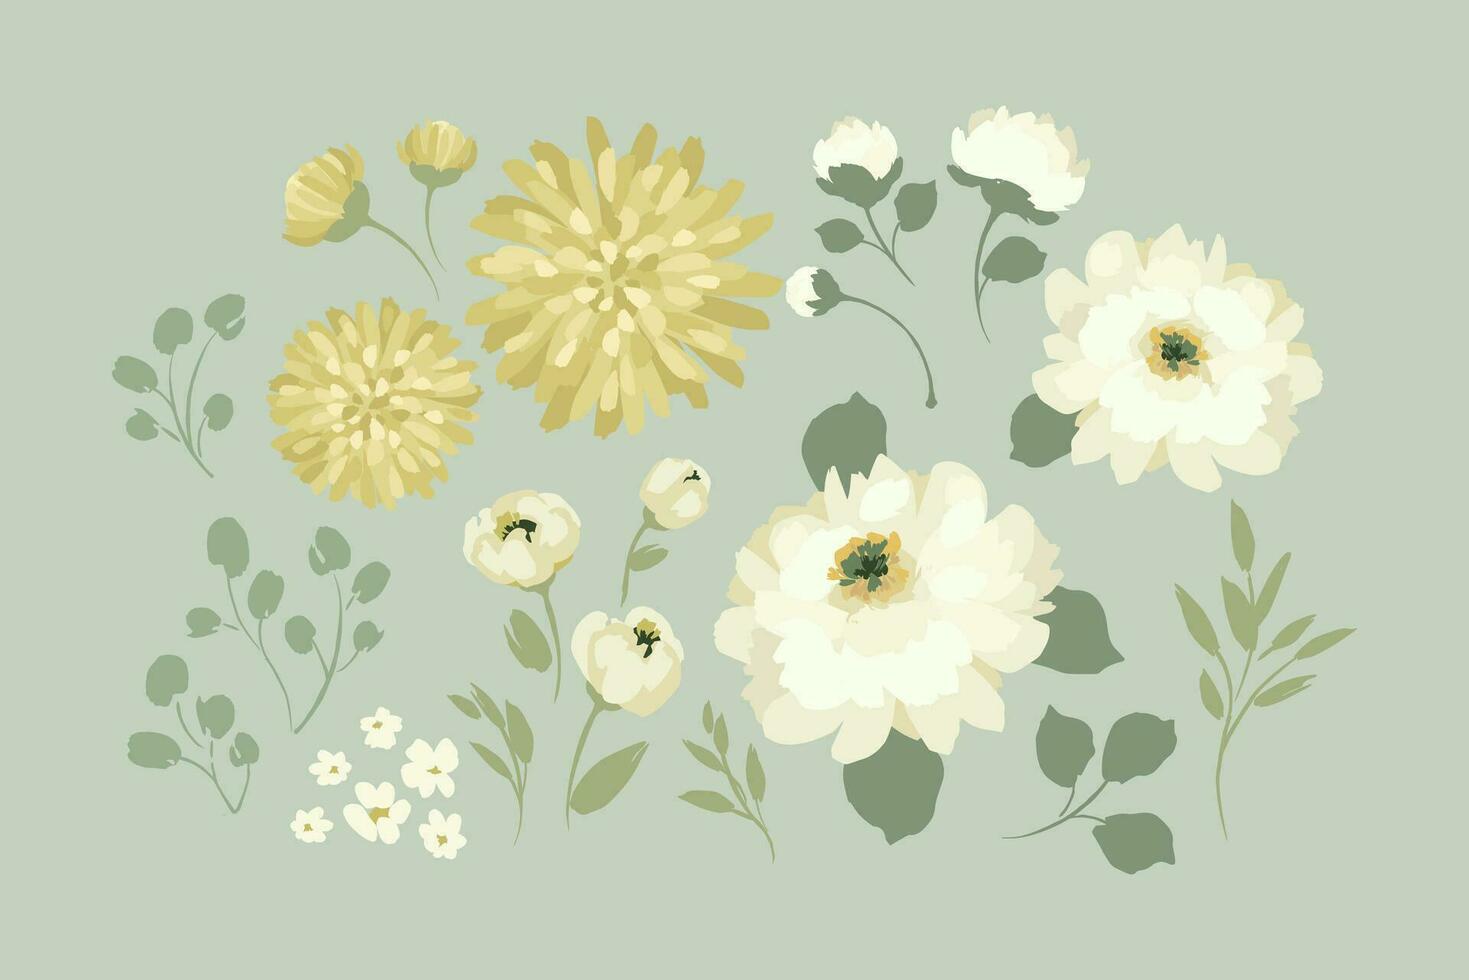 conjunto de resumen floral diseño elementos. hojas, flores, césped, sucursales. vector ilustraciones